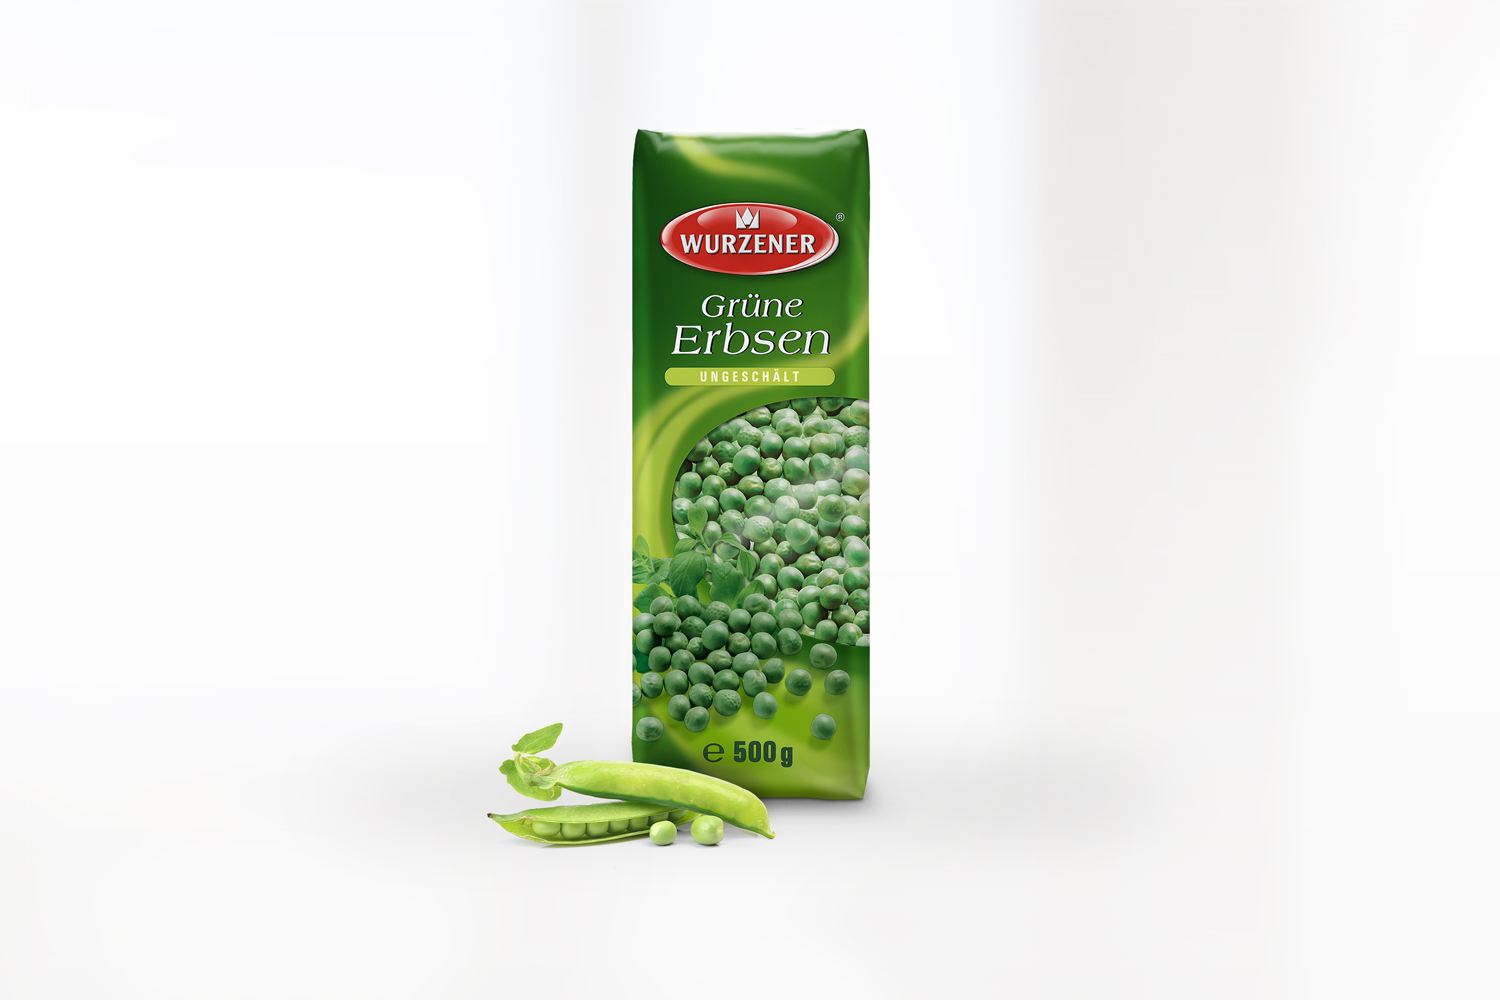 gruene-erbsen-ungeschaelt-wurzener-500g